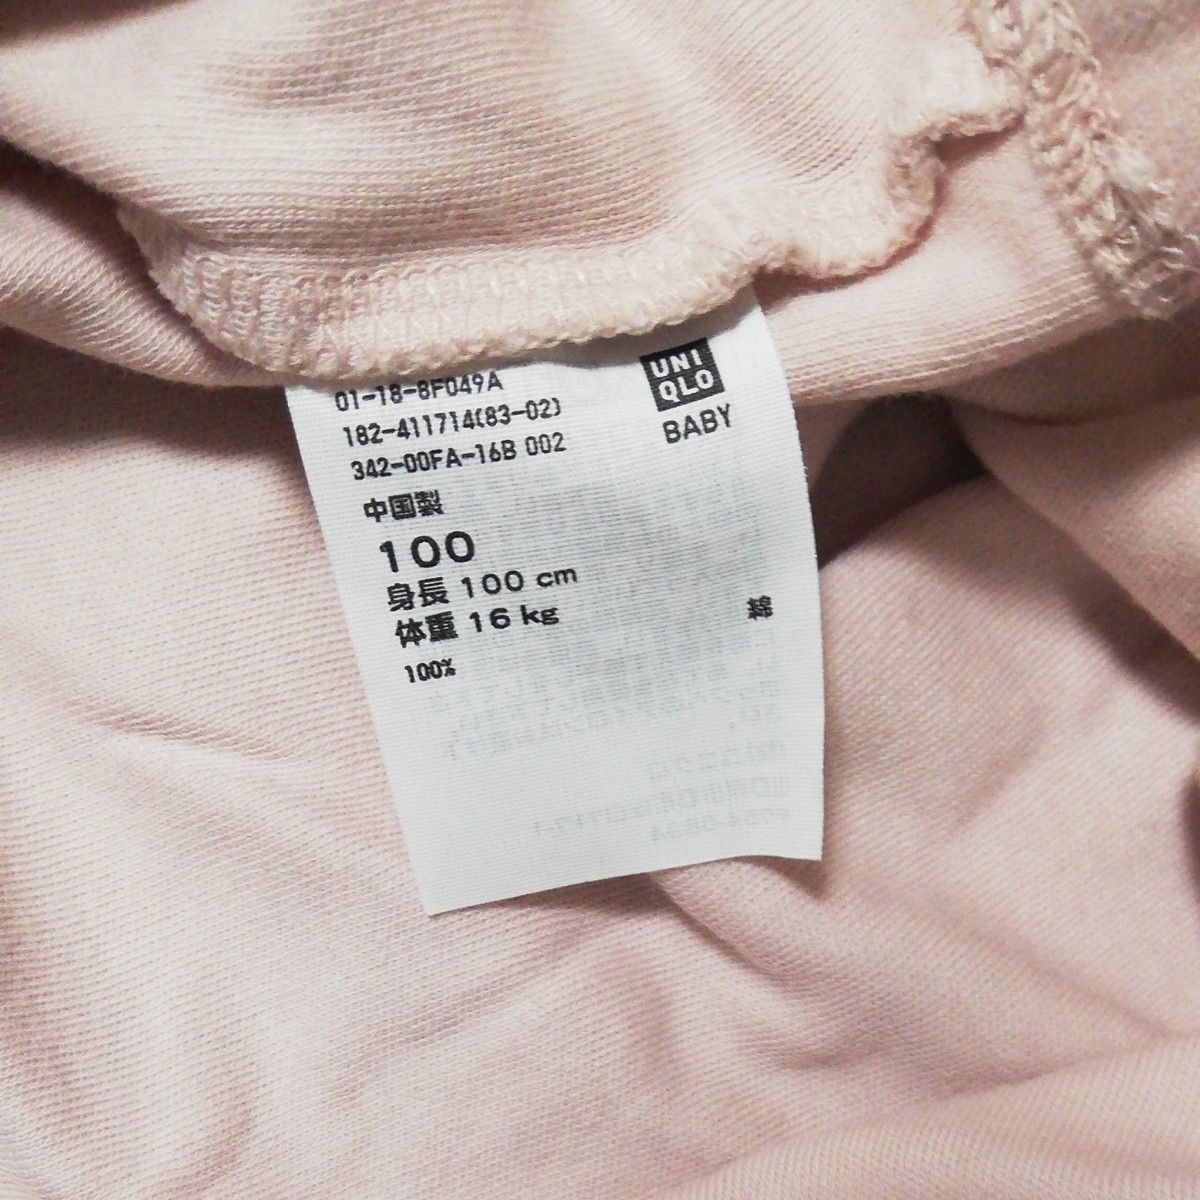 ユニクロ 長袖カットソー トップス 100サイズ 薄ピンク